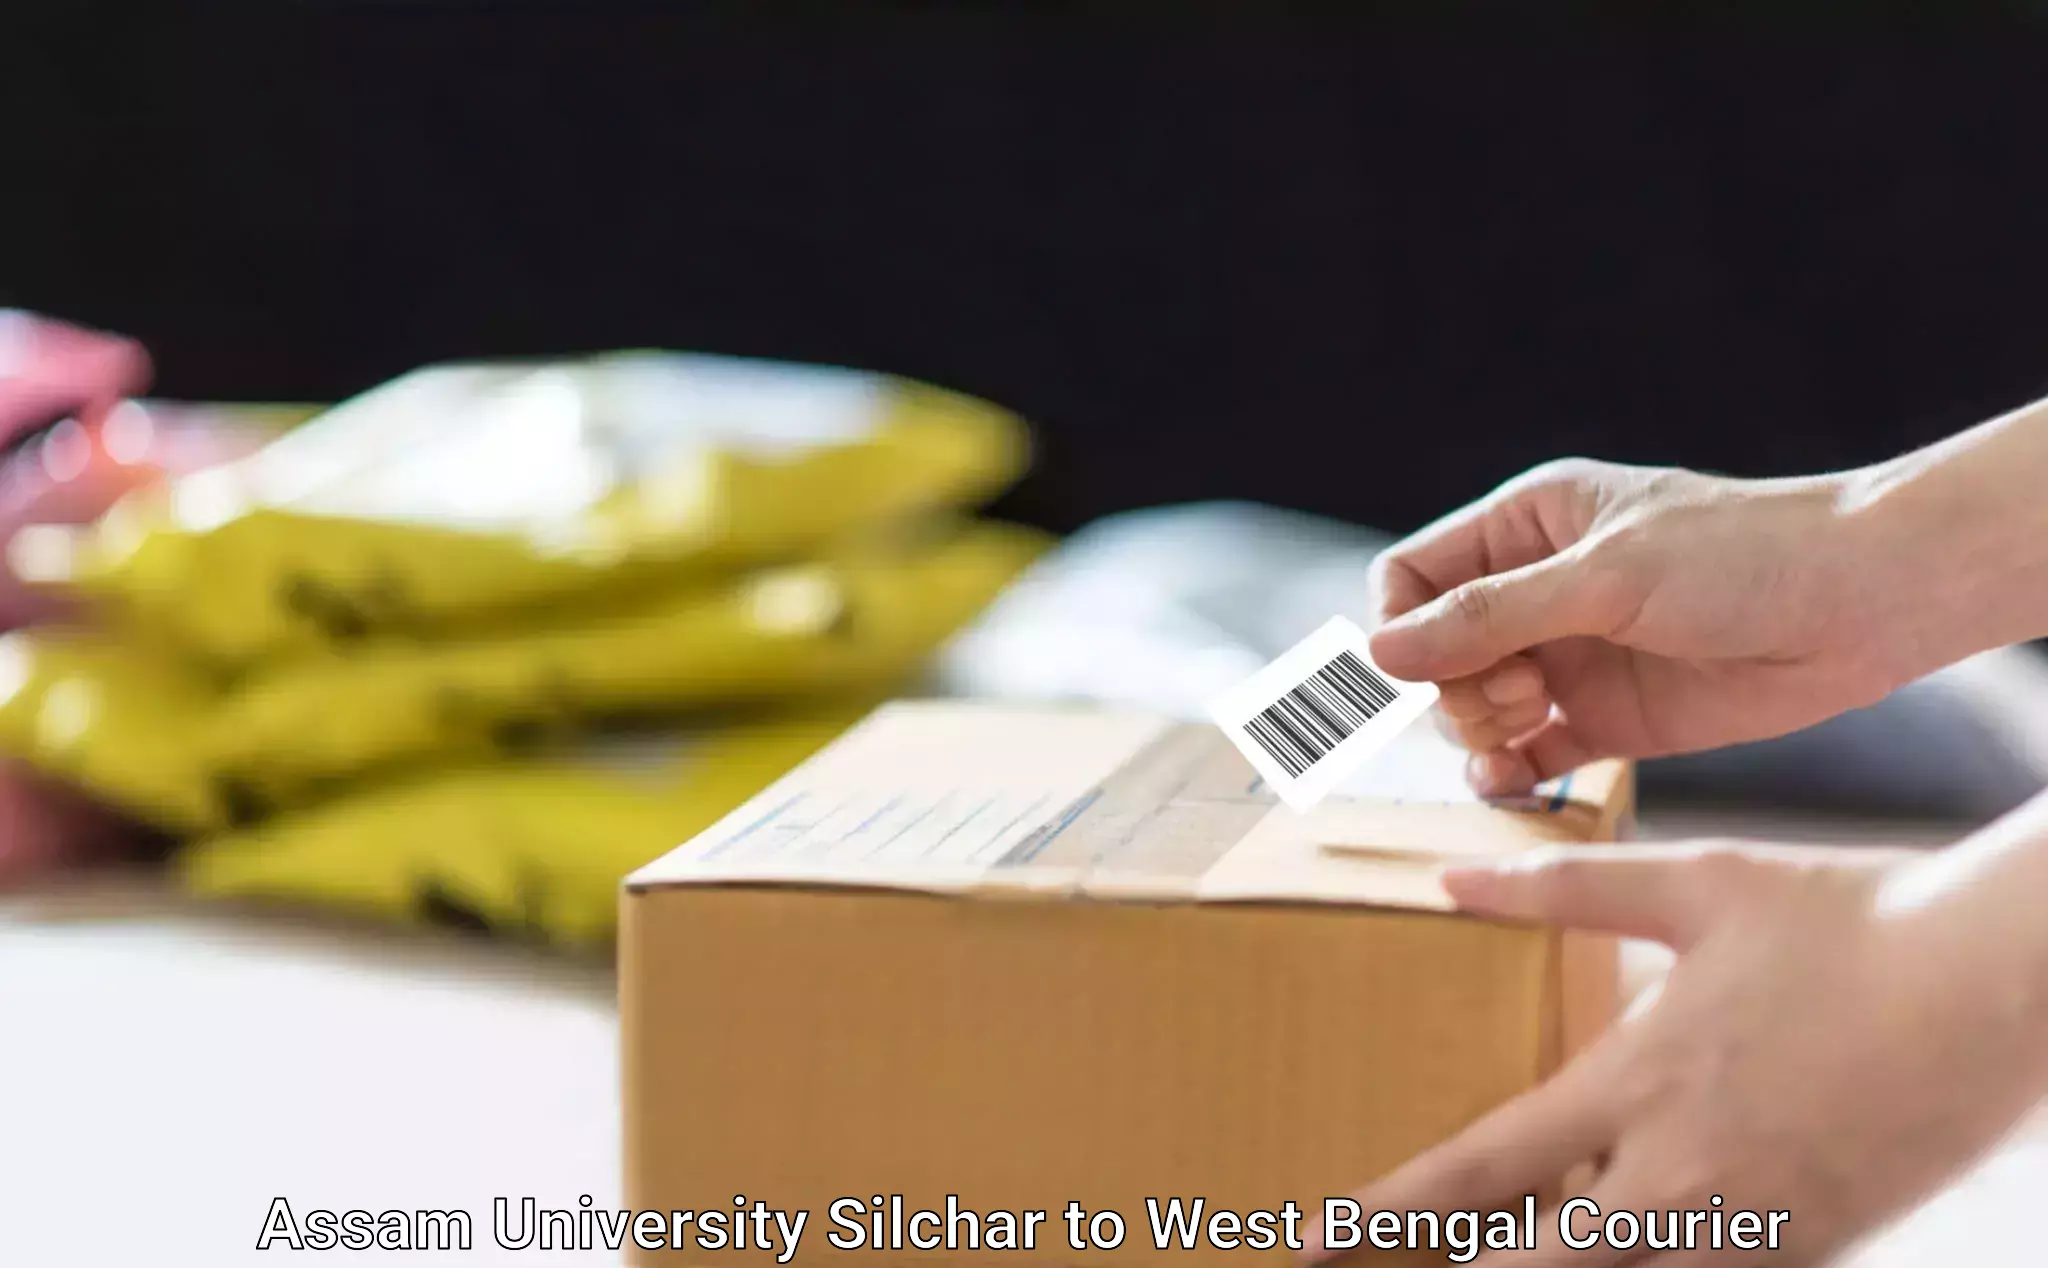 Automated parcel services Assam University Silchar to Kandi